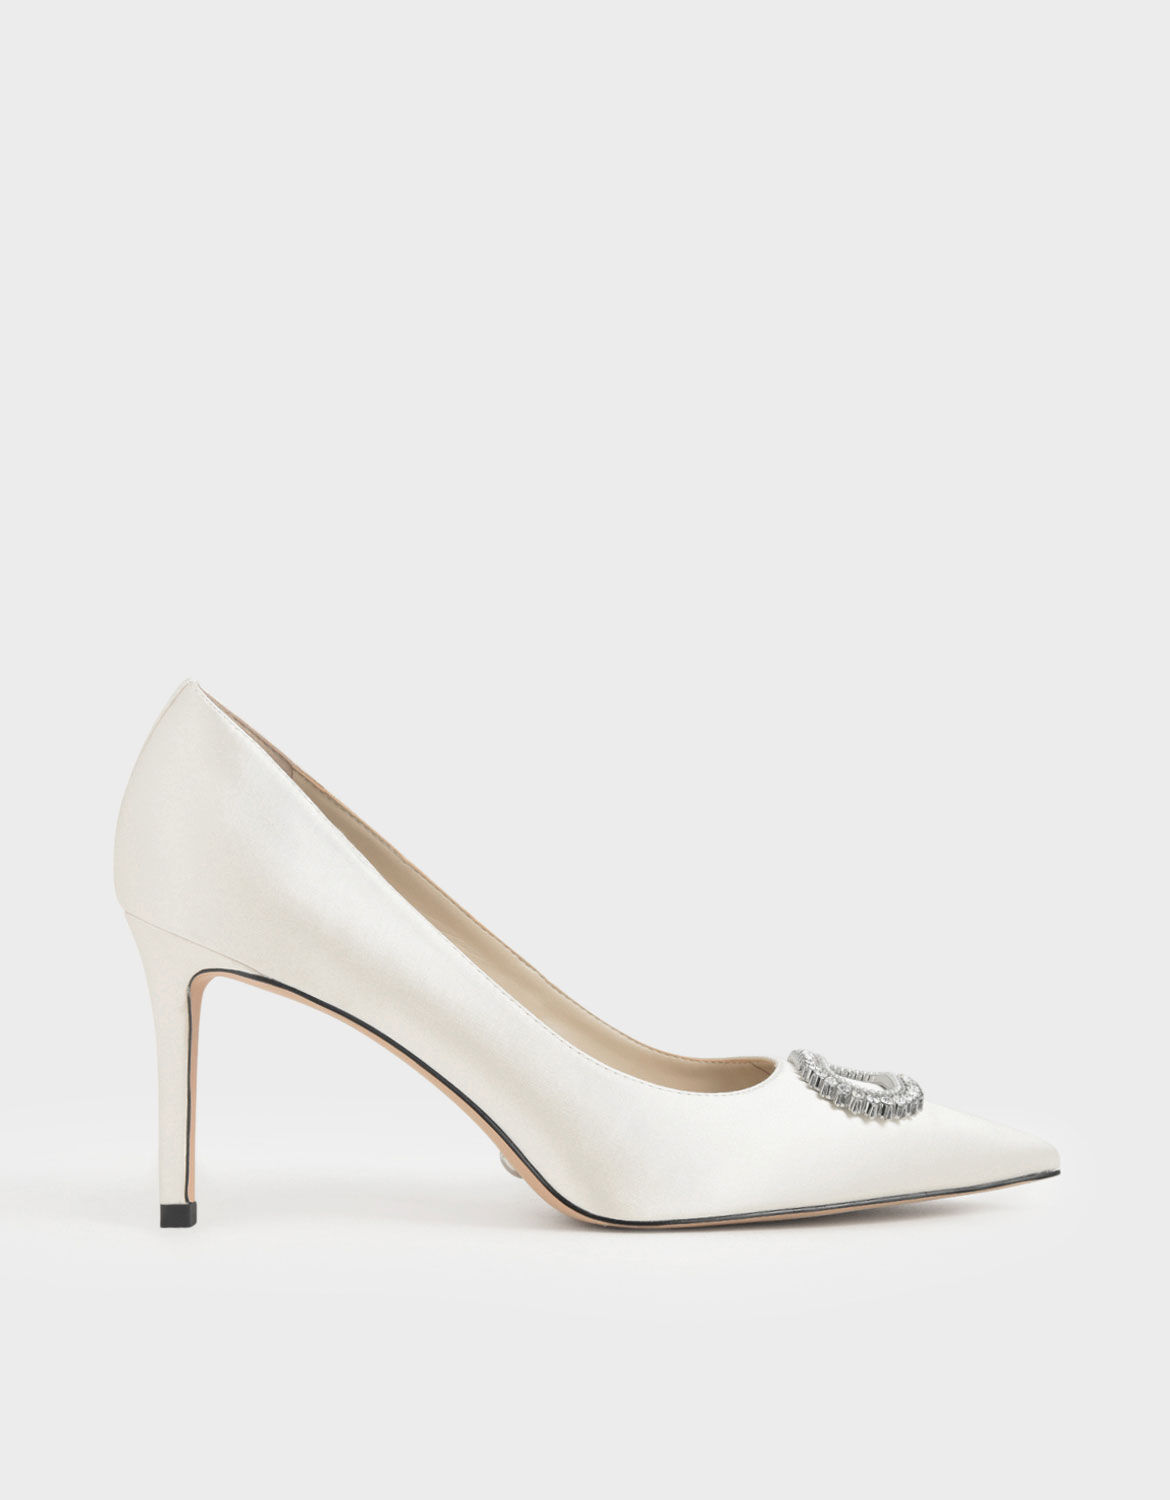 white satin wedding shoes uk